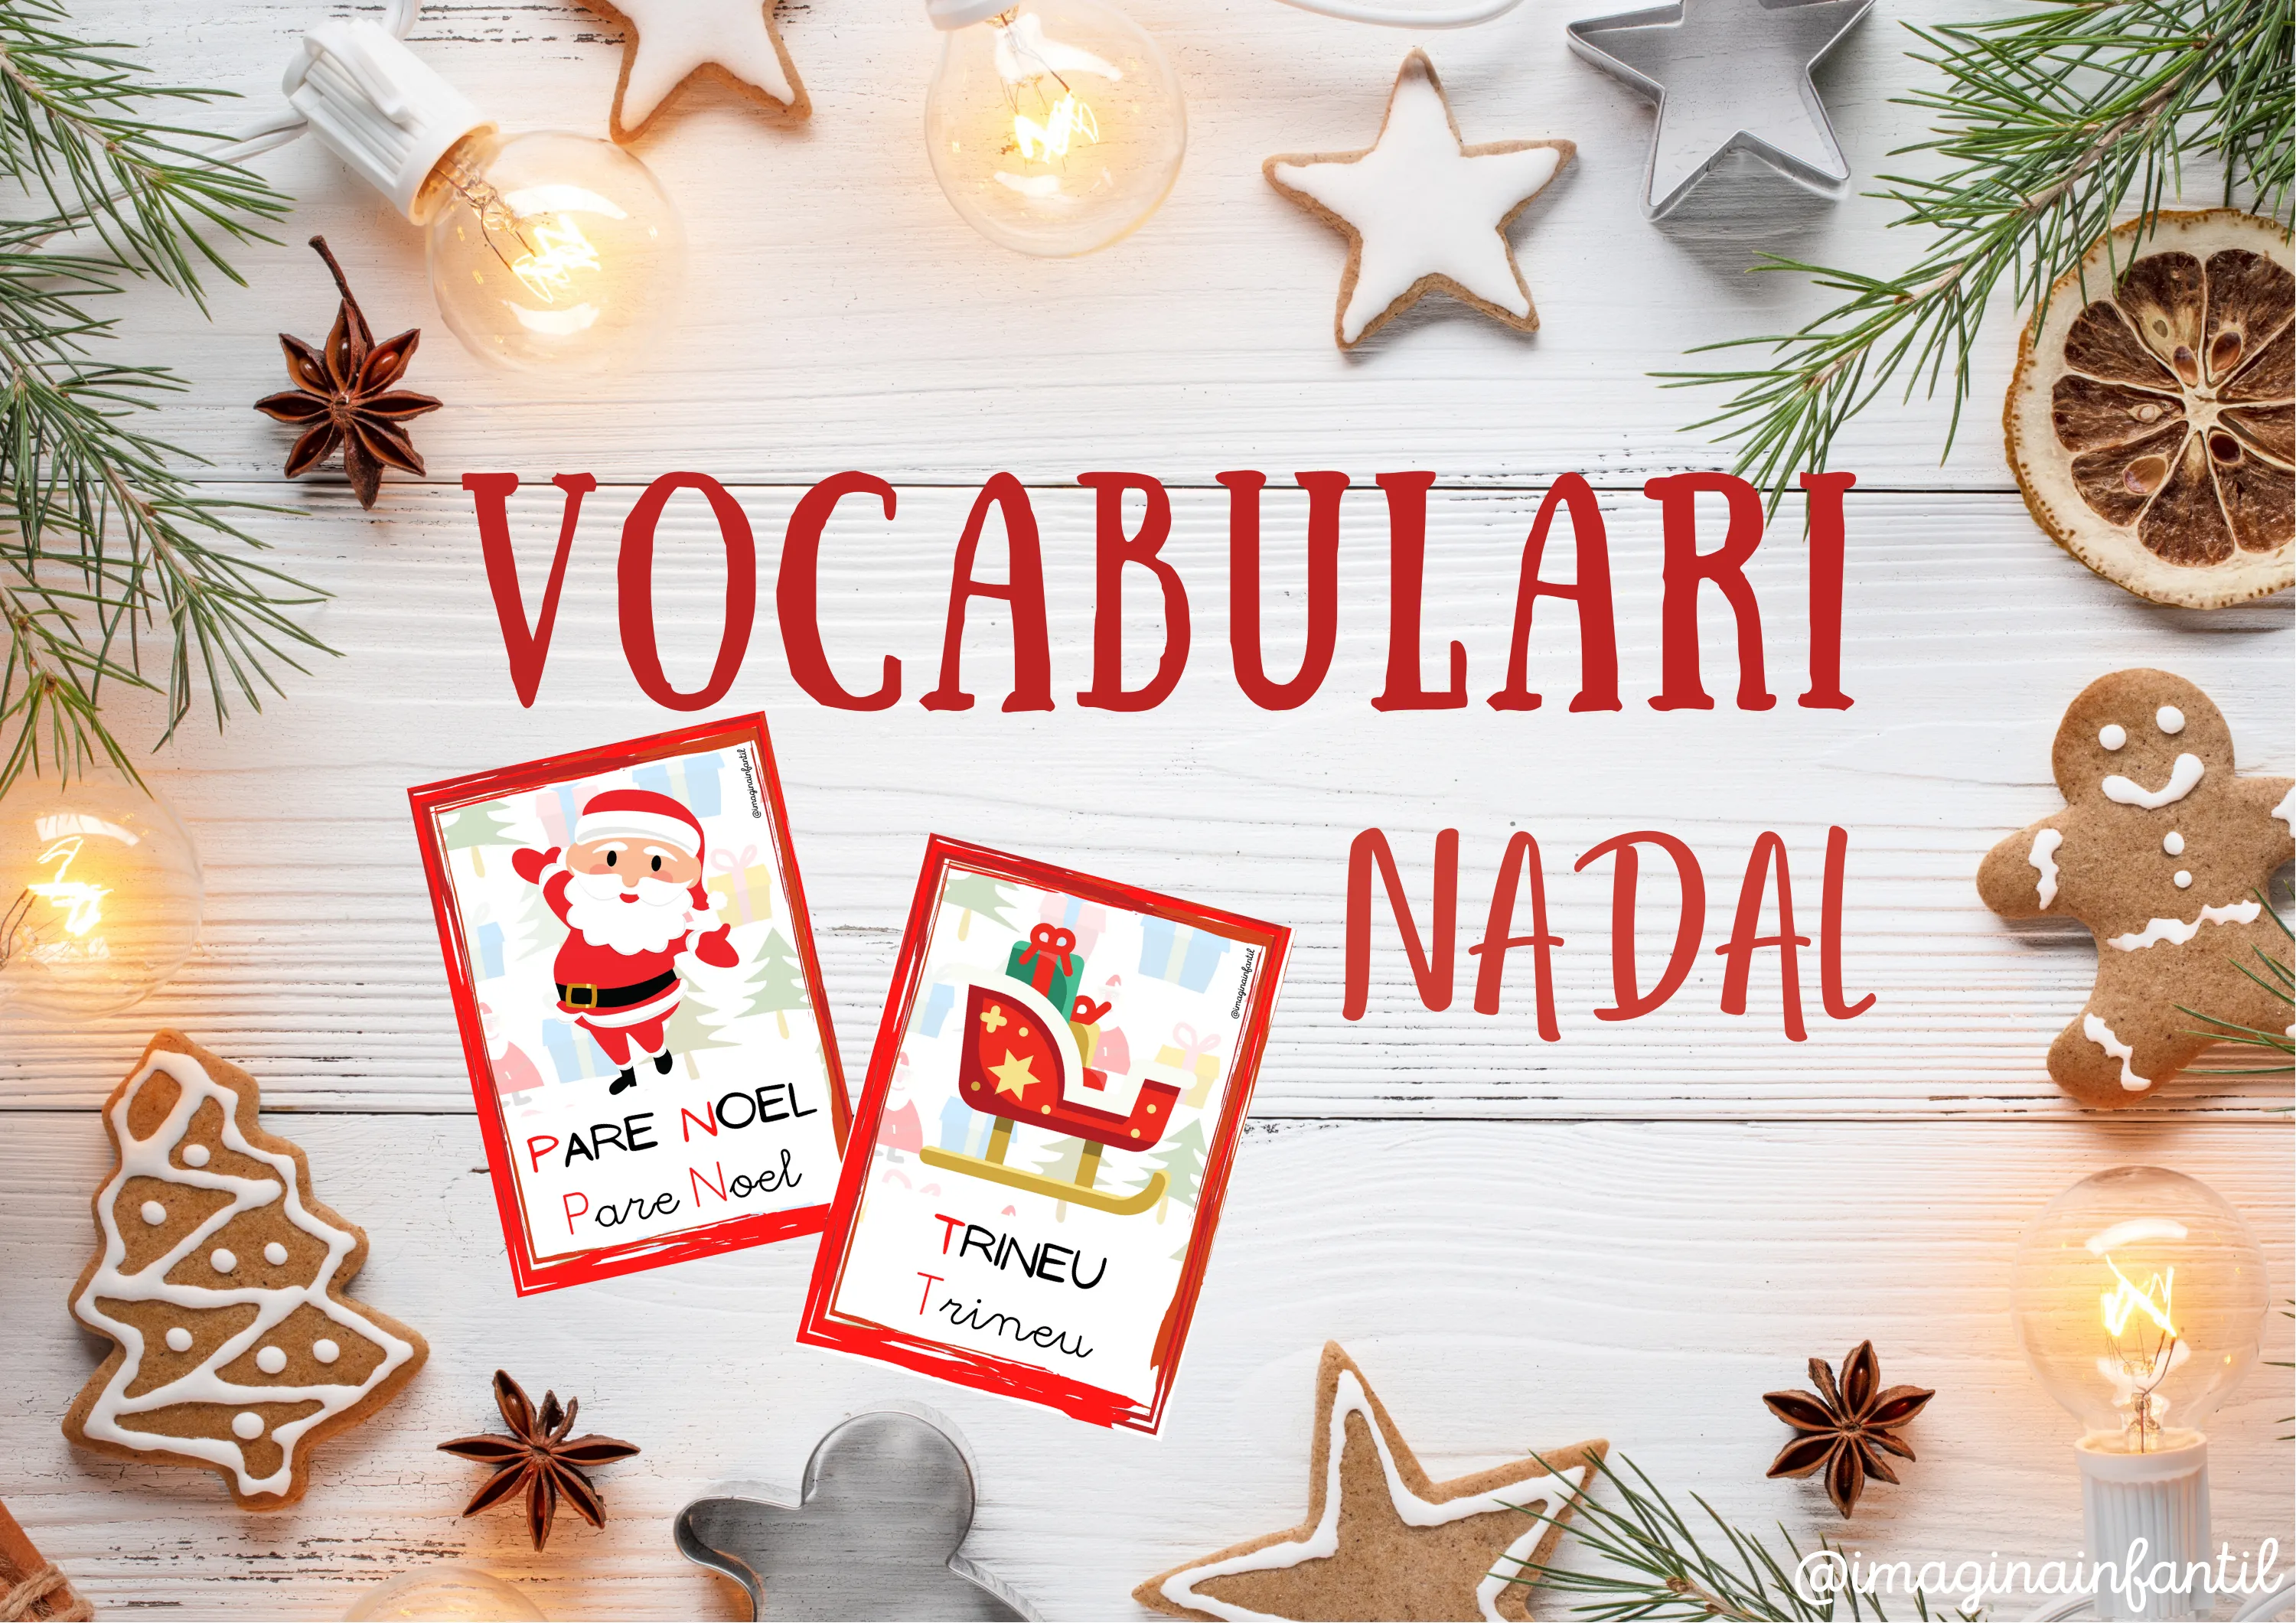 Vocabulari - Nadal